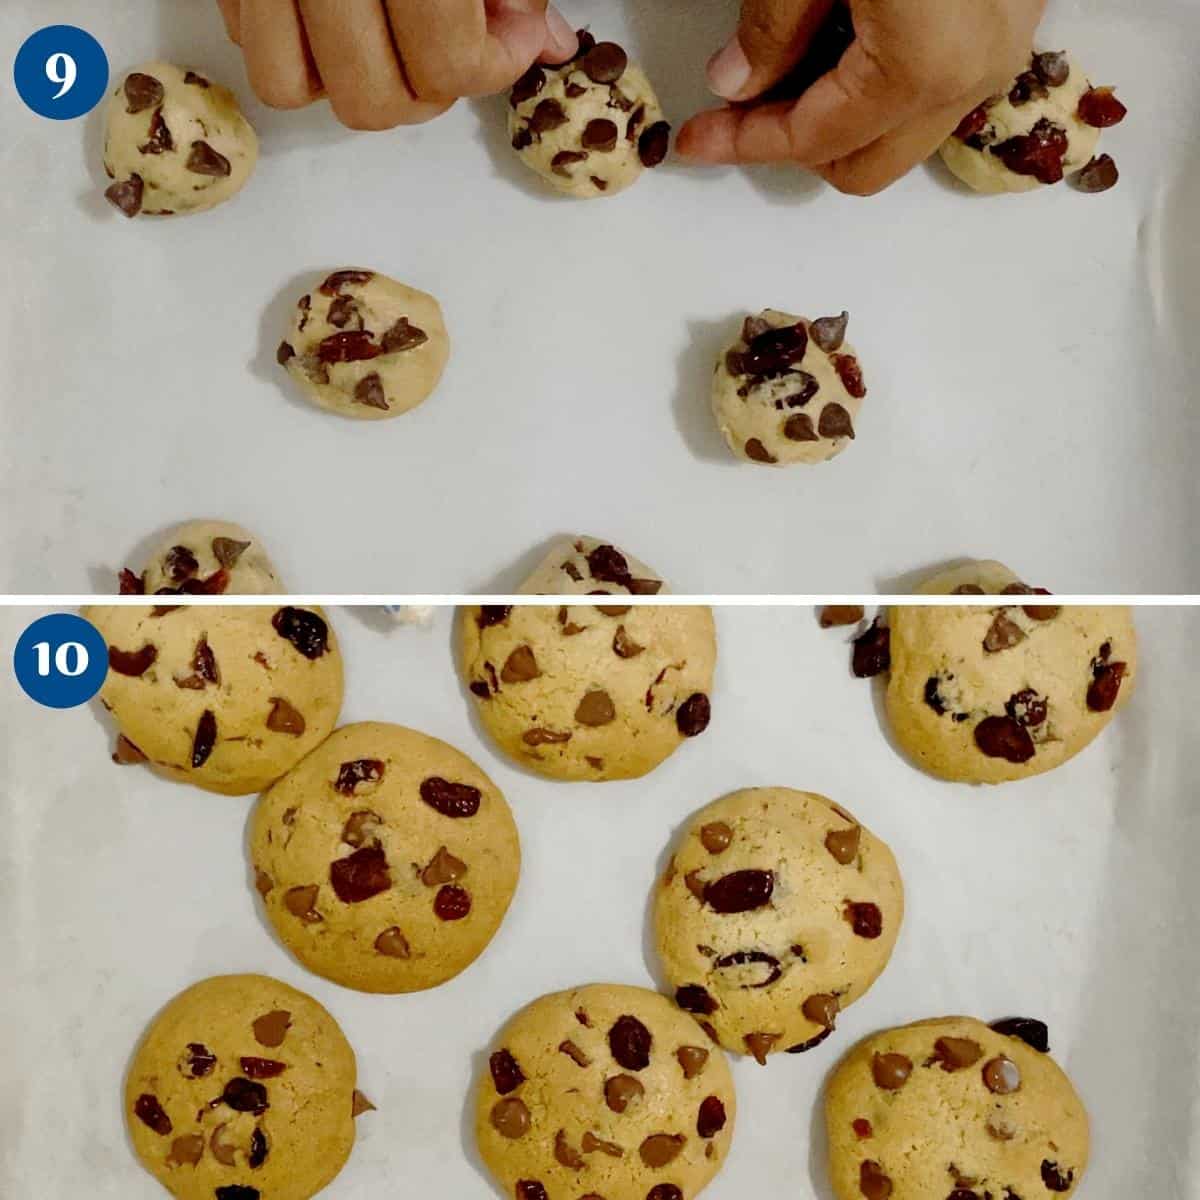 Progress pictures baking the cookies.